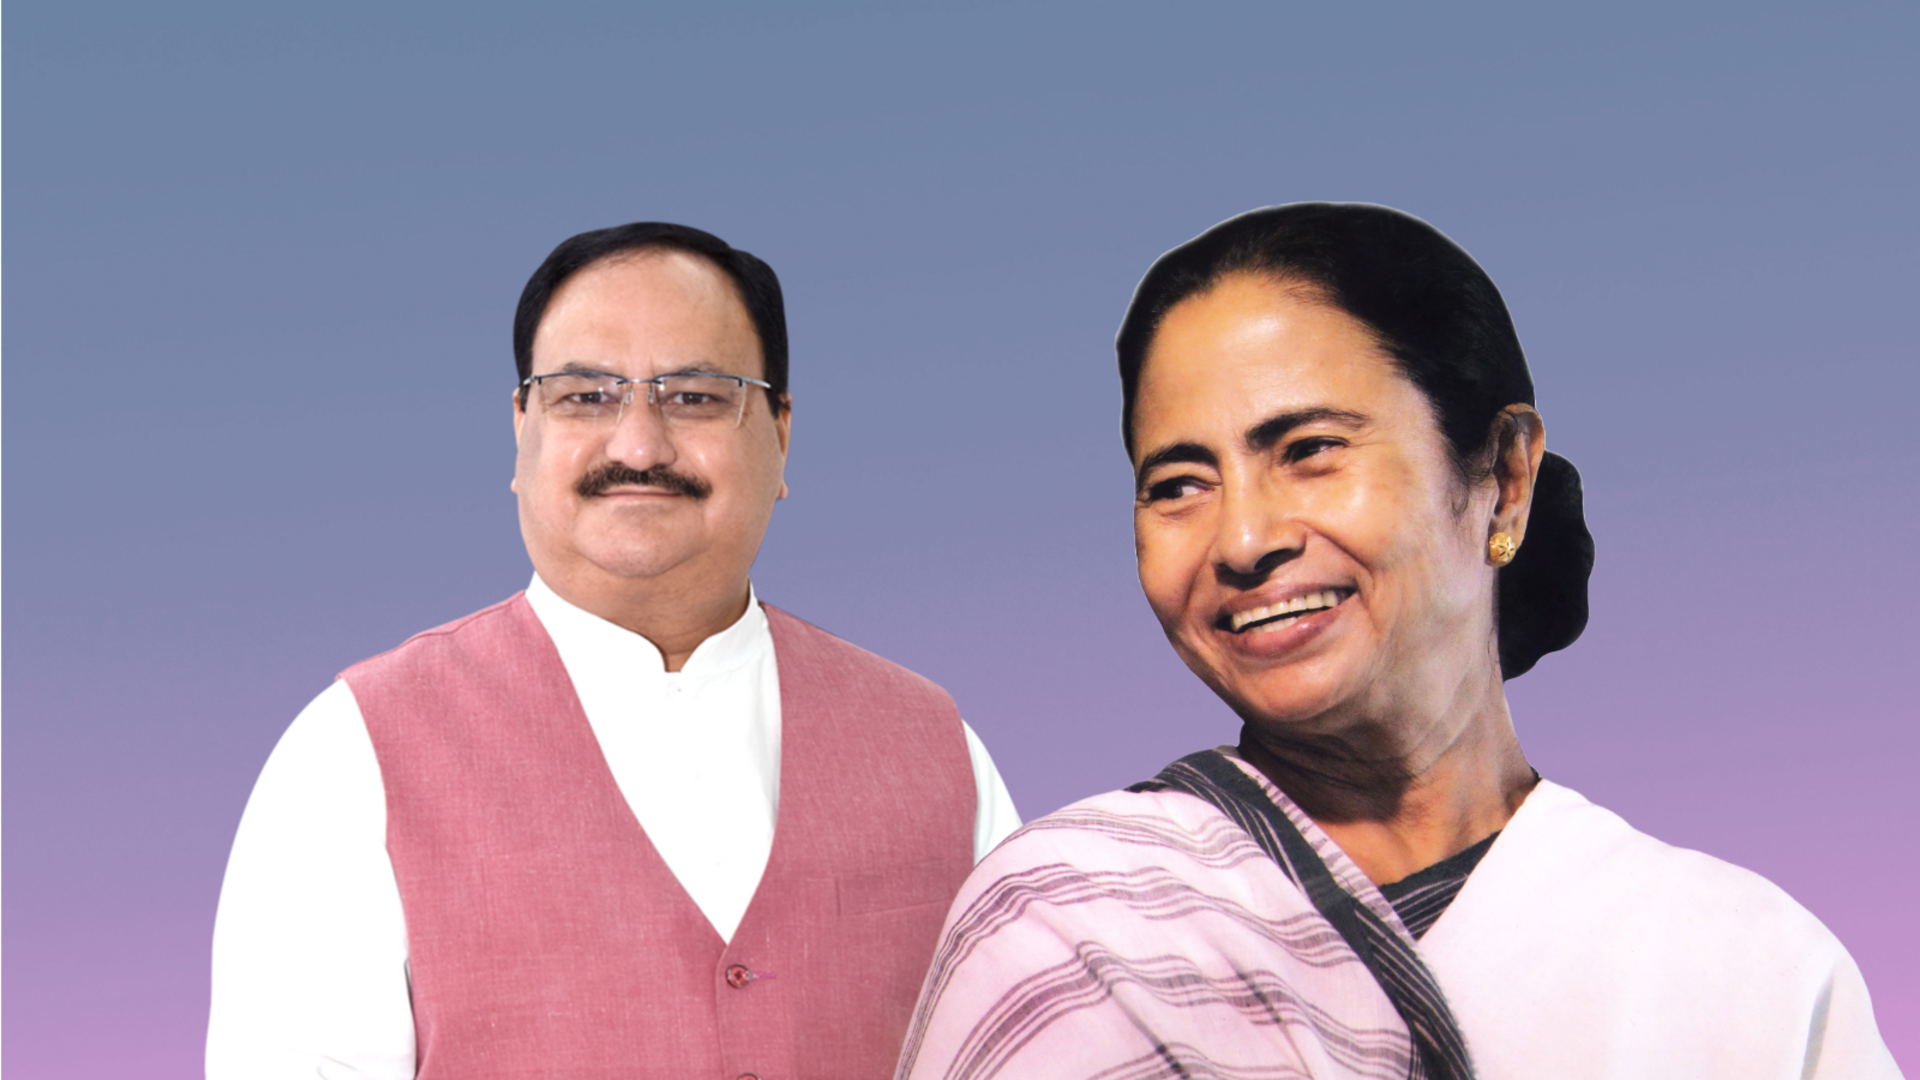 पश्चिम बंगाल: लोकसभा चुनाव में टिकट न मिलने से भाजपा और TMC नेताओं में असंतोष